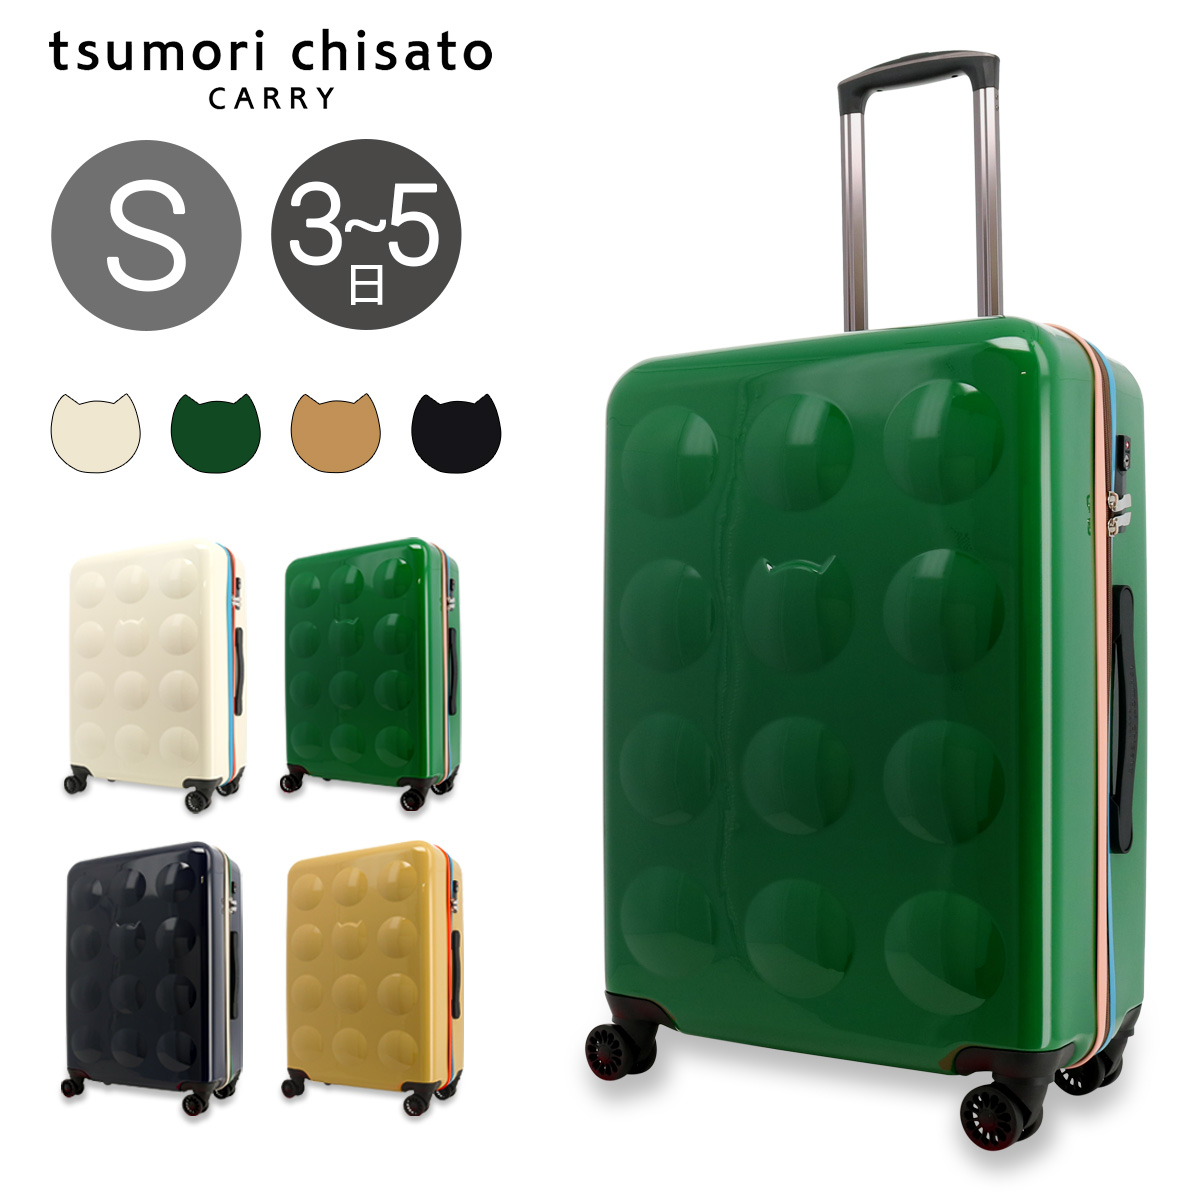 ツモリチサト キャリー スーツケース 58L 60cm 3.9kg ハードキャリー 4261 新ネコドットキャリー tsumori chisato  CARRY TSAロック搭載